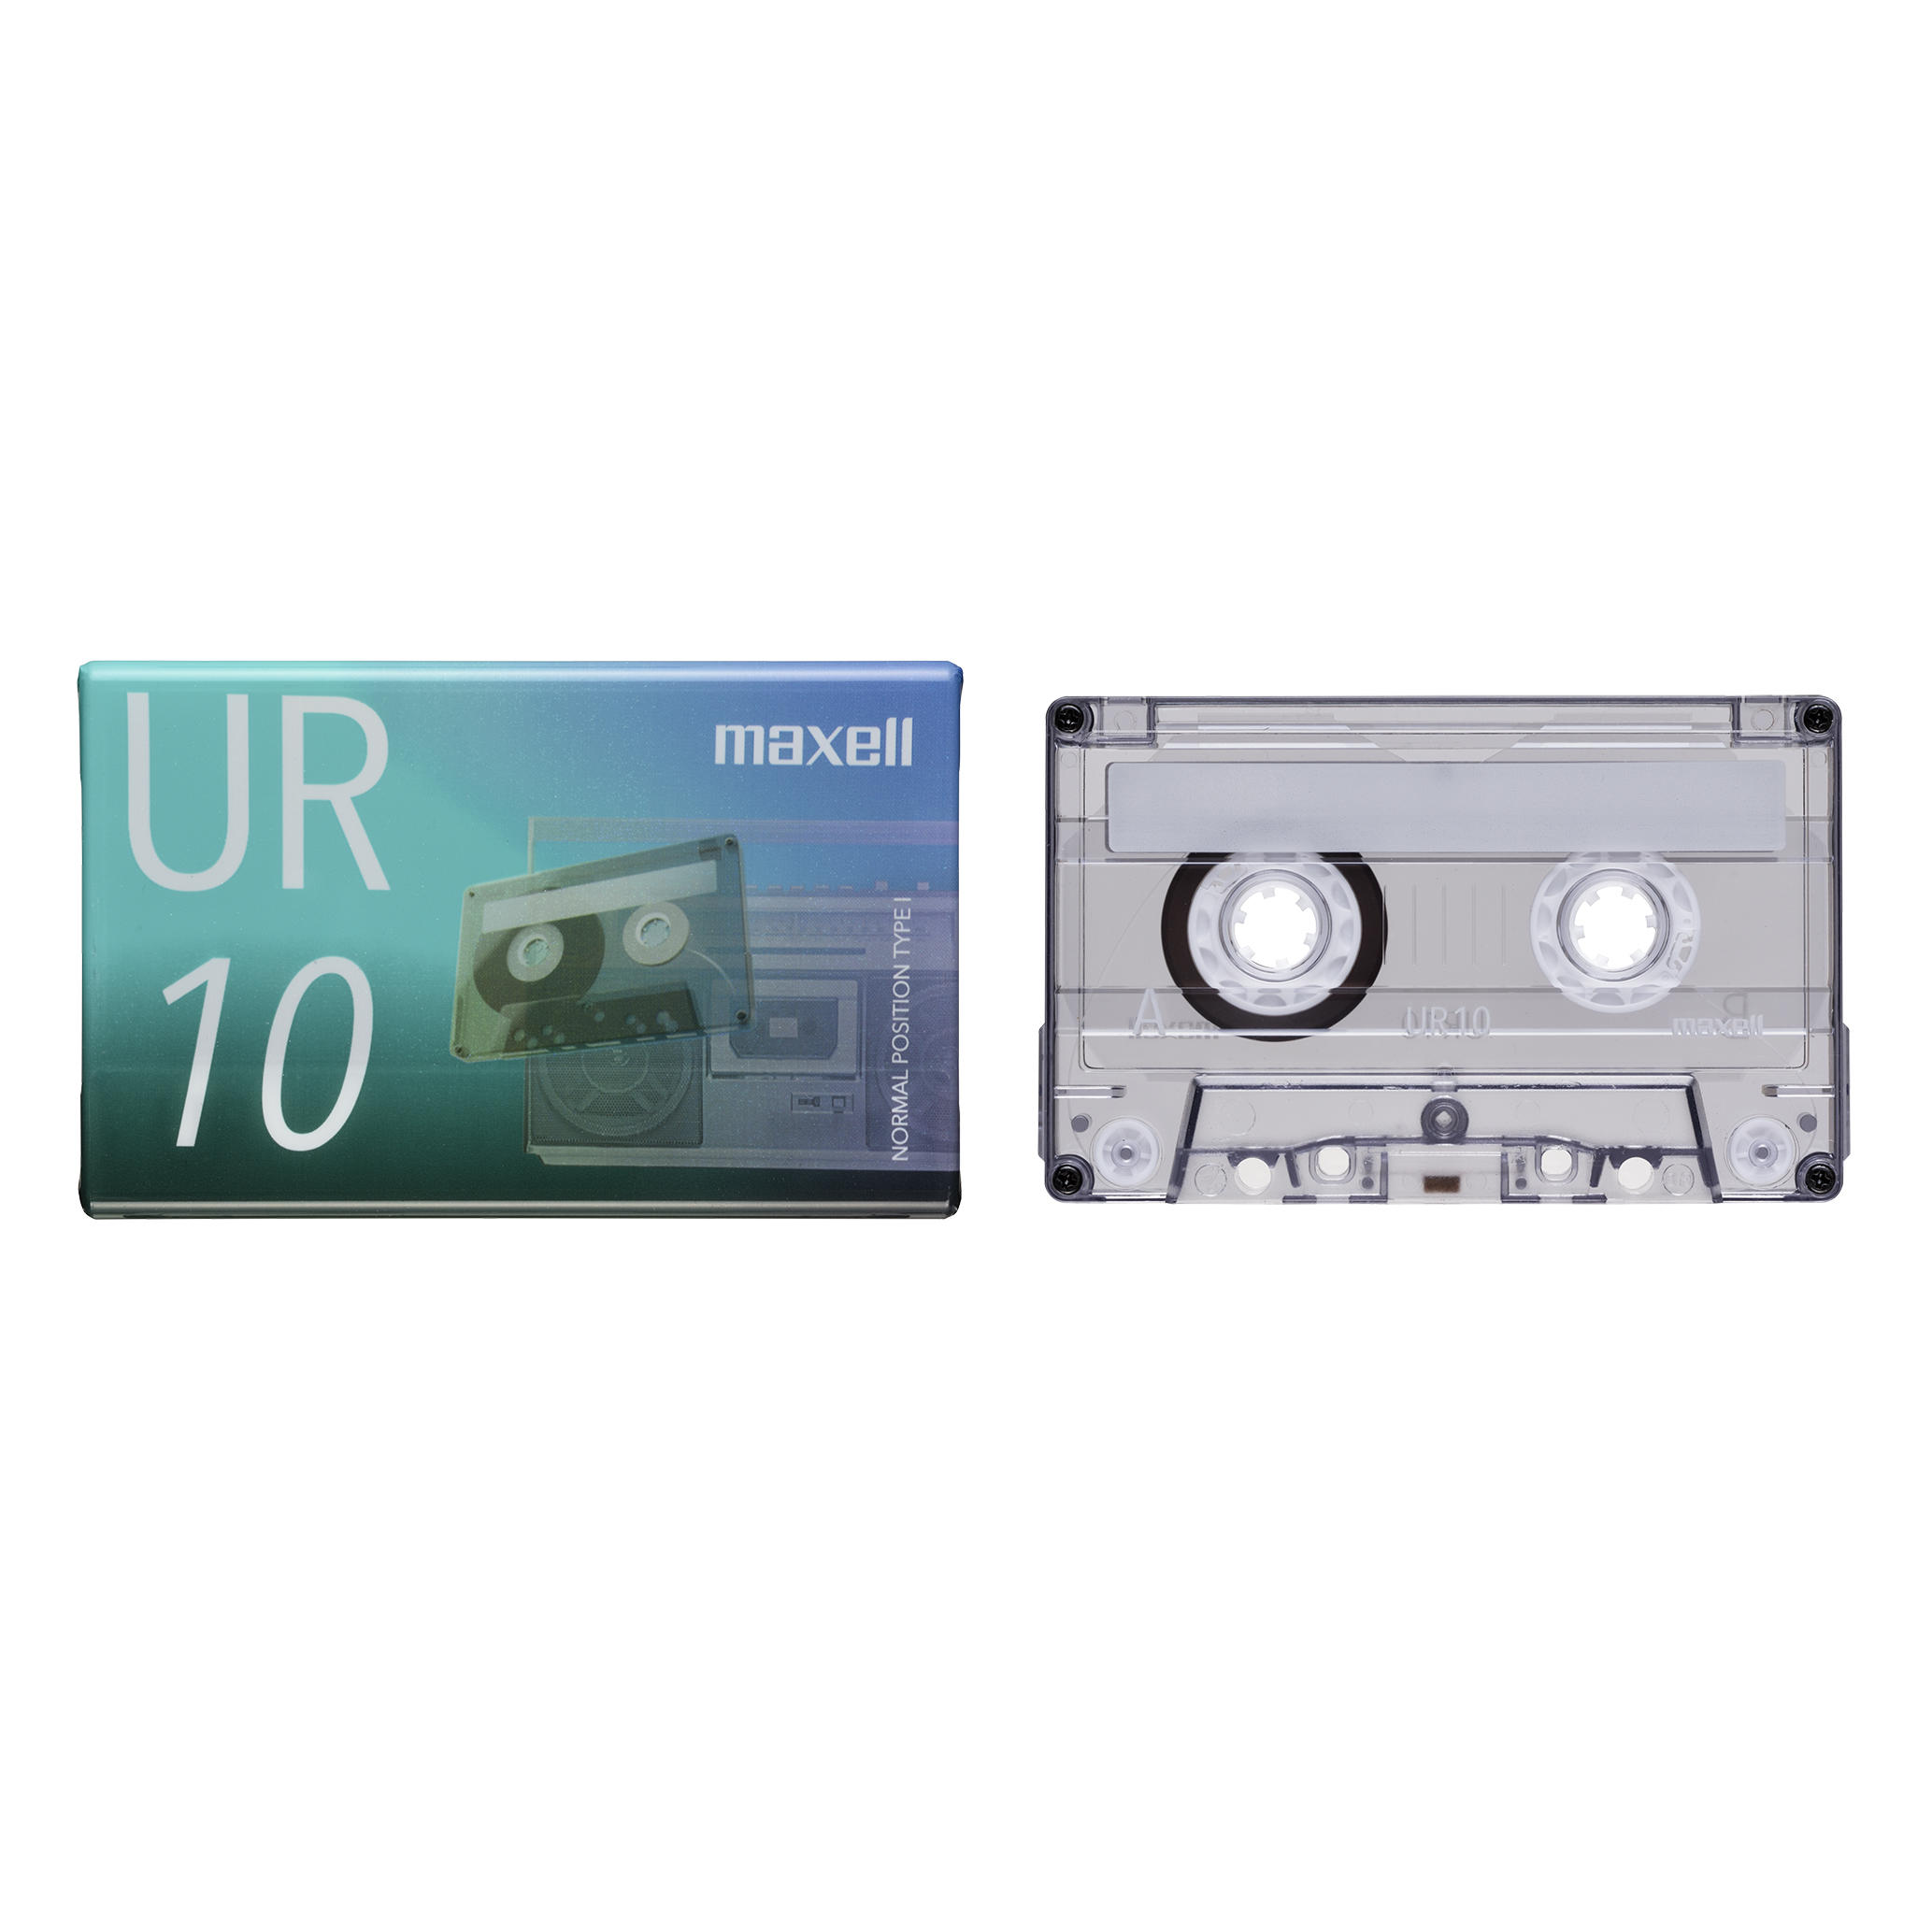 684円 人気商品ランキング maxell 録音用 カセットテープ ノーマル Type1 90分 3巻 UR-90L 3P